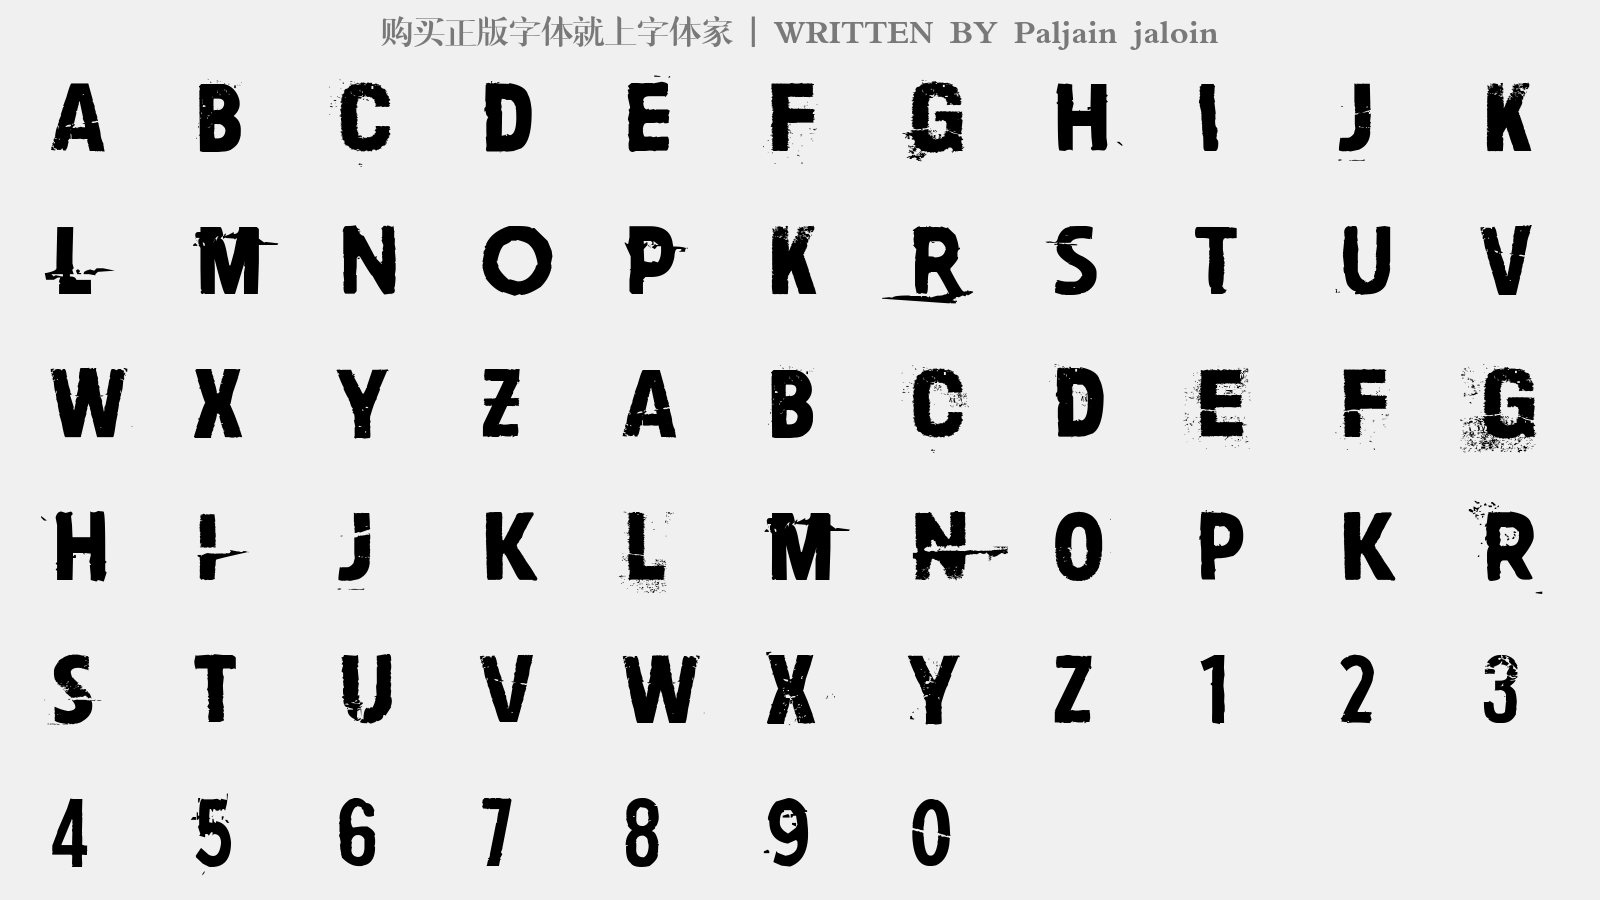 Paljain jaloin - 大写字母/小写字母/数字